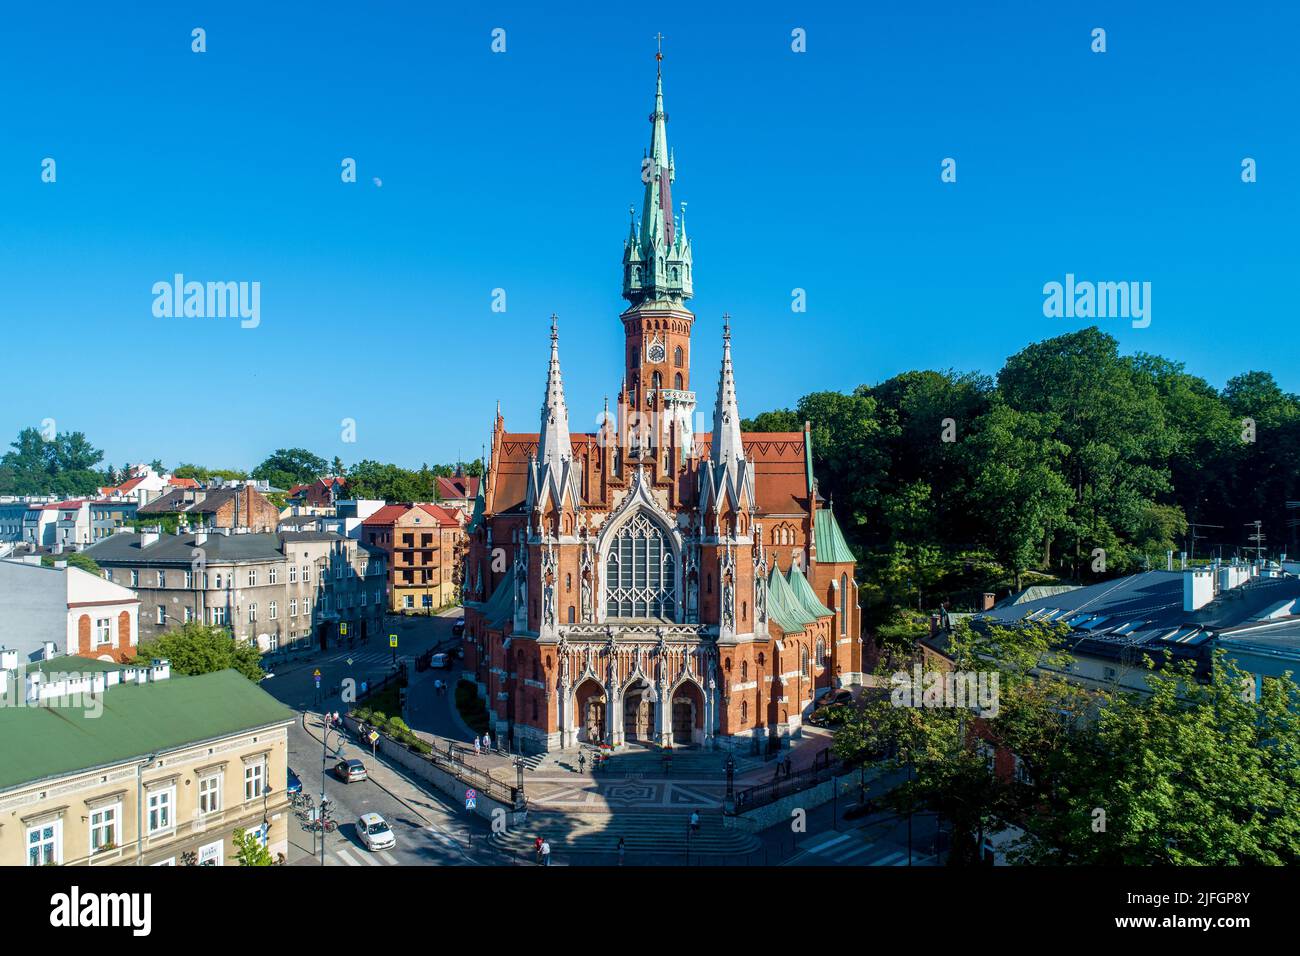 Cracovia, Polonia. Chiesa di San Giuseppe - una storica chiesa cattolica in stile neogotico nella piazza Podgorski di Podgorze Foto Stock